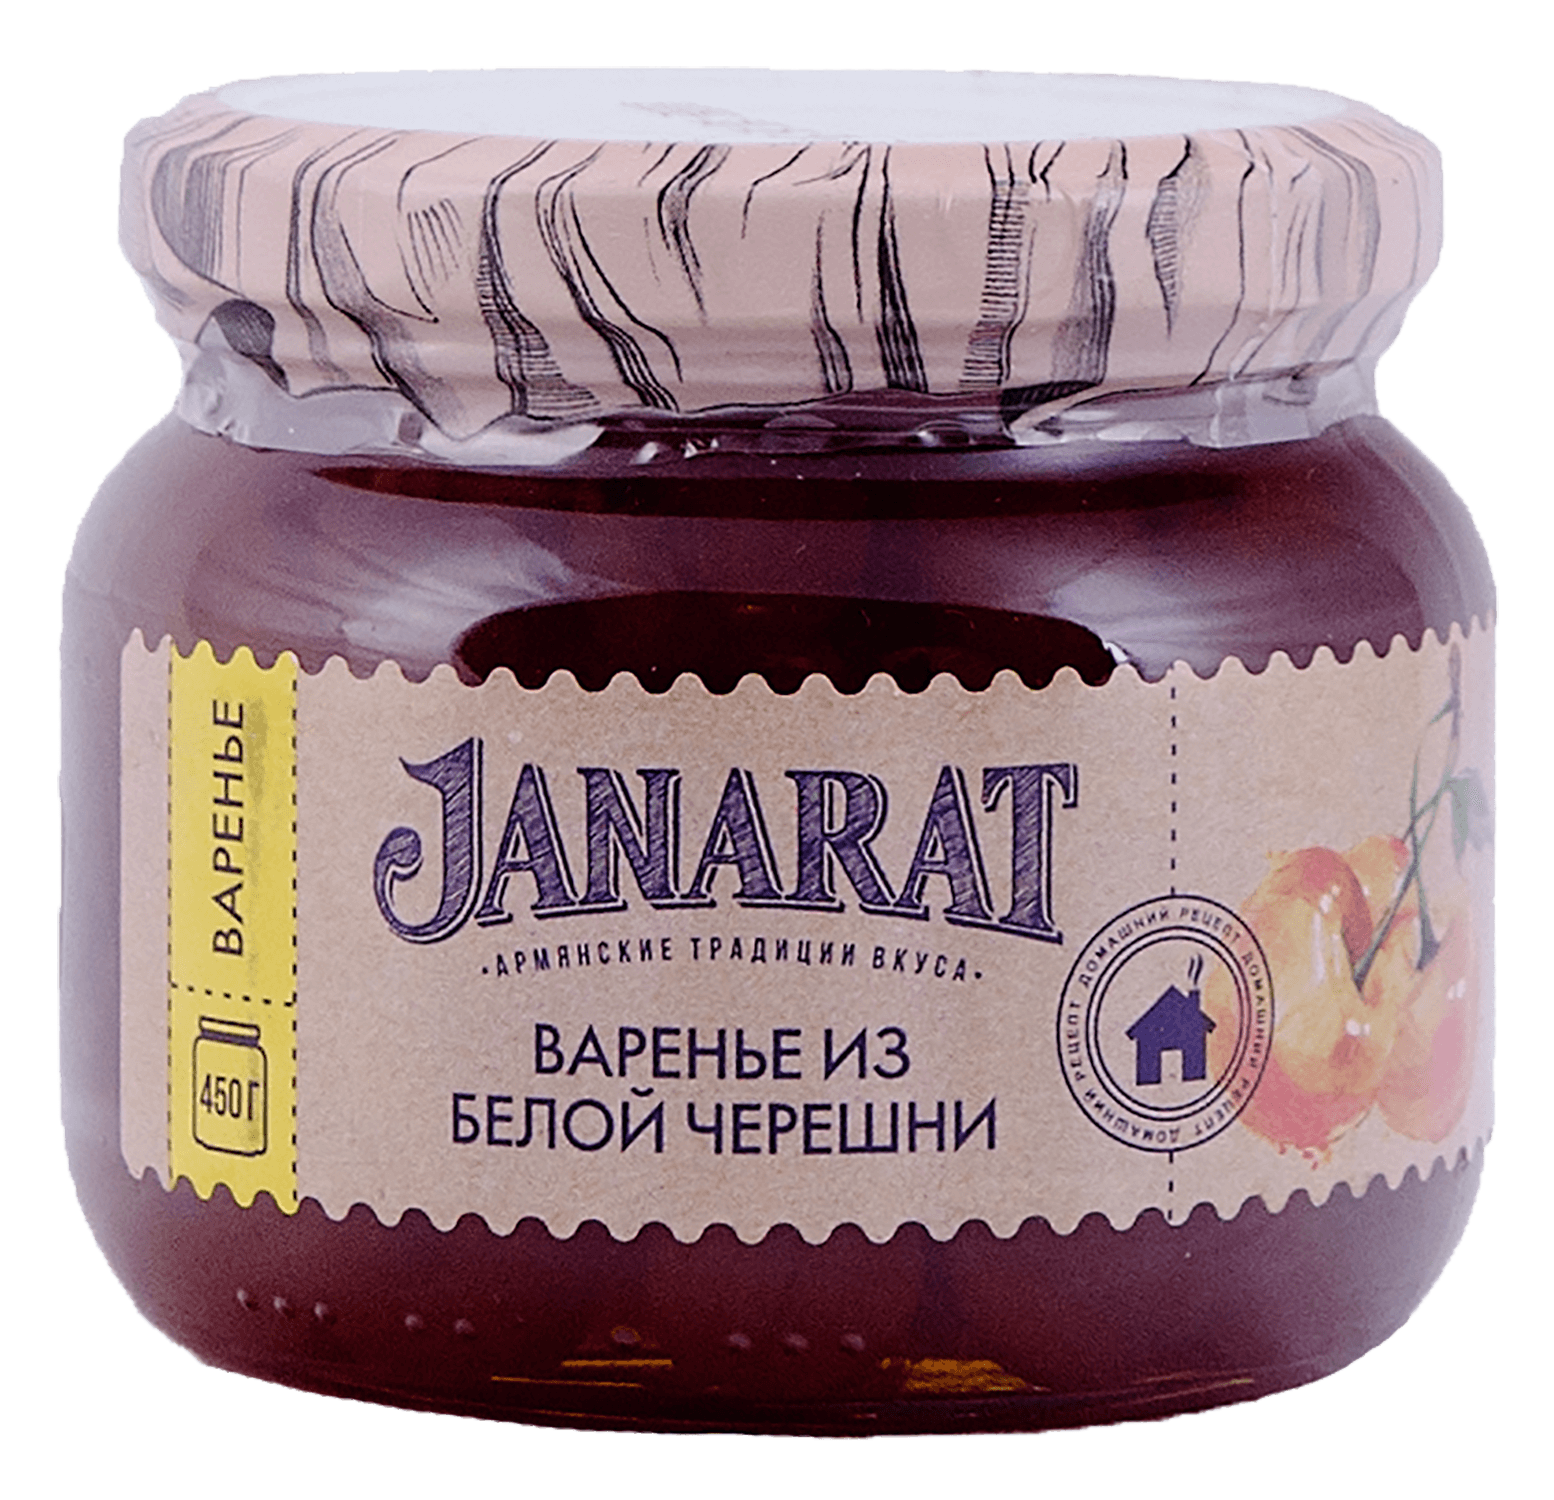 White cherry jam Janarat vkusvill cherry jam 310 g